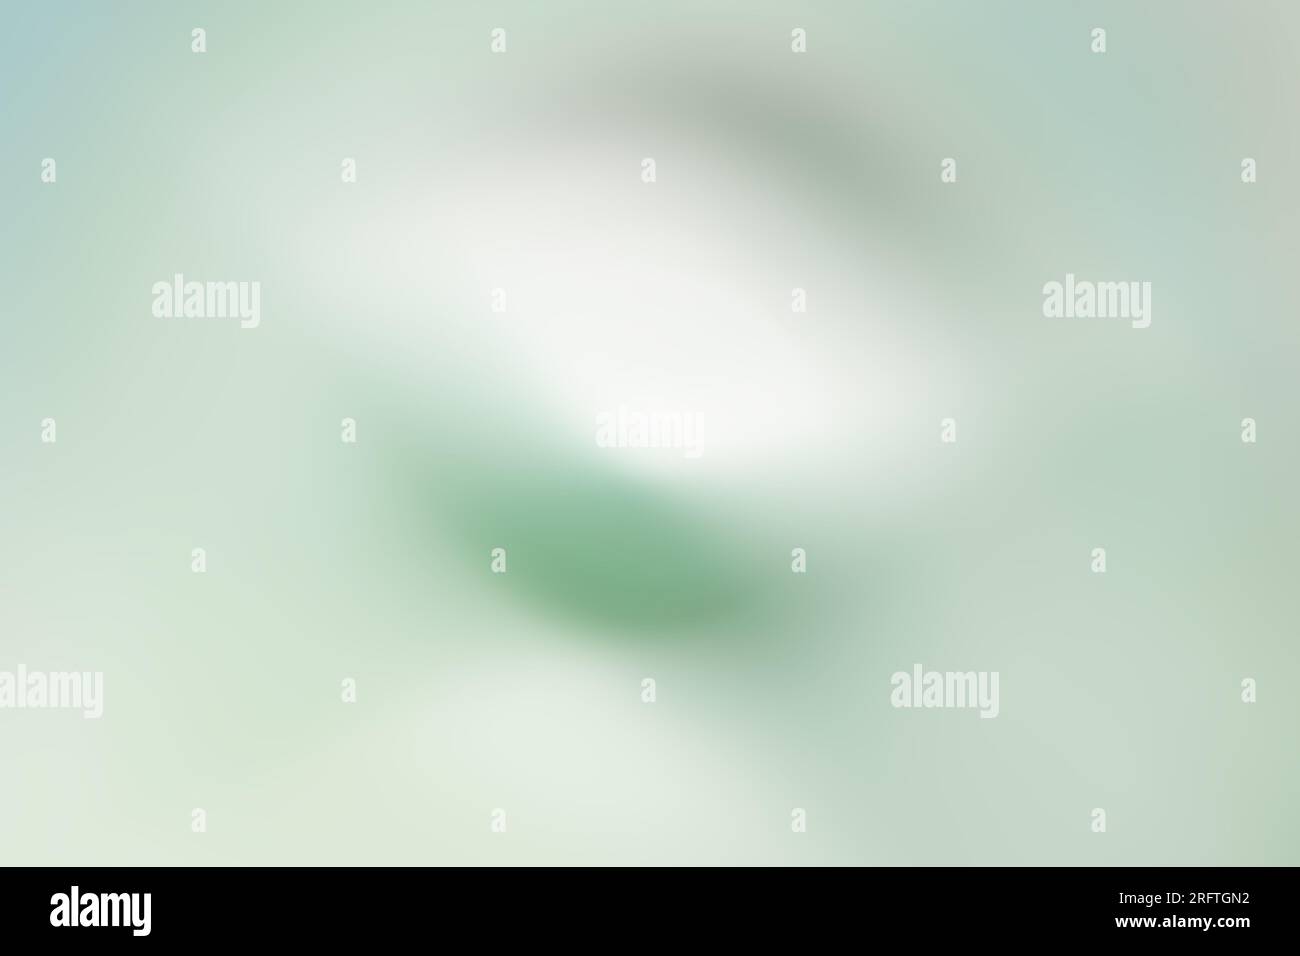 Ein traumhafter, wirbelig abstrakter digitaler Hintergrund in blassgrünen Farbtönen Stockfoto